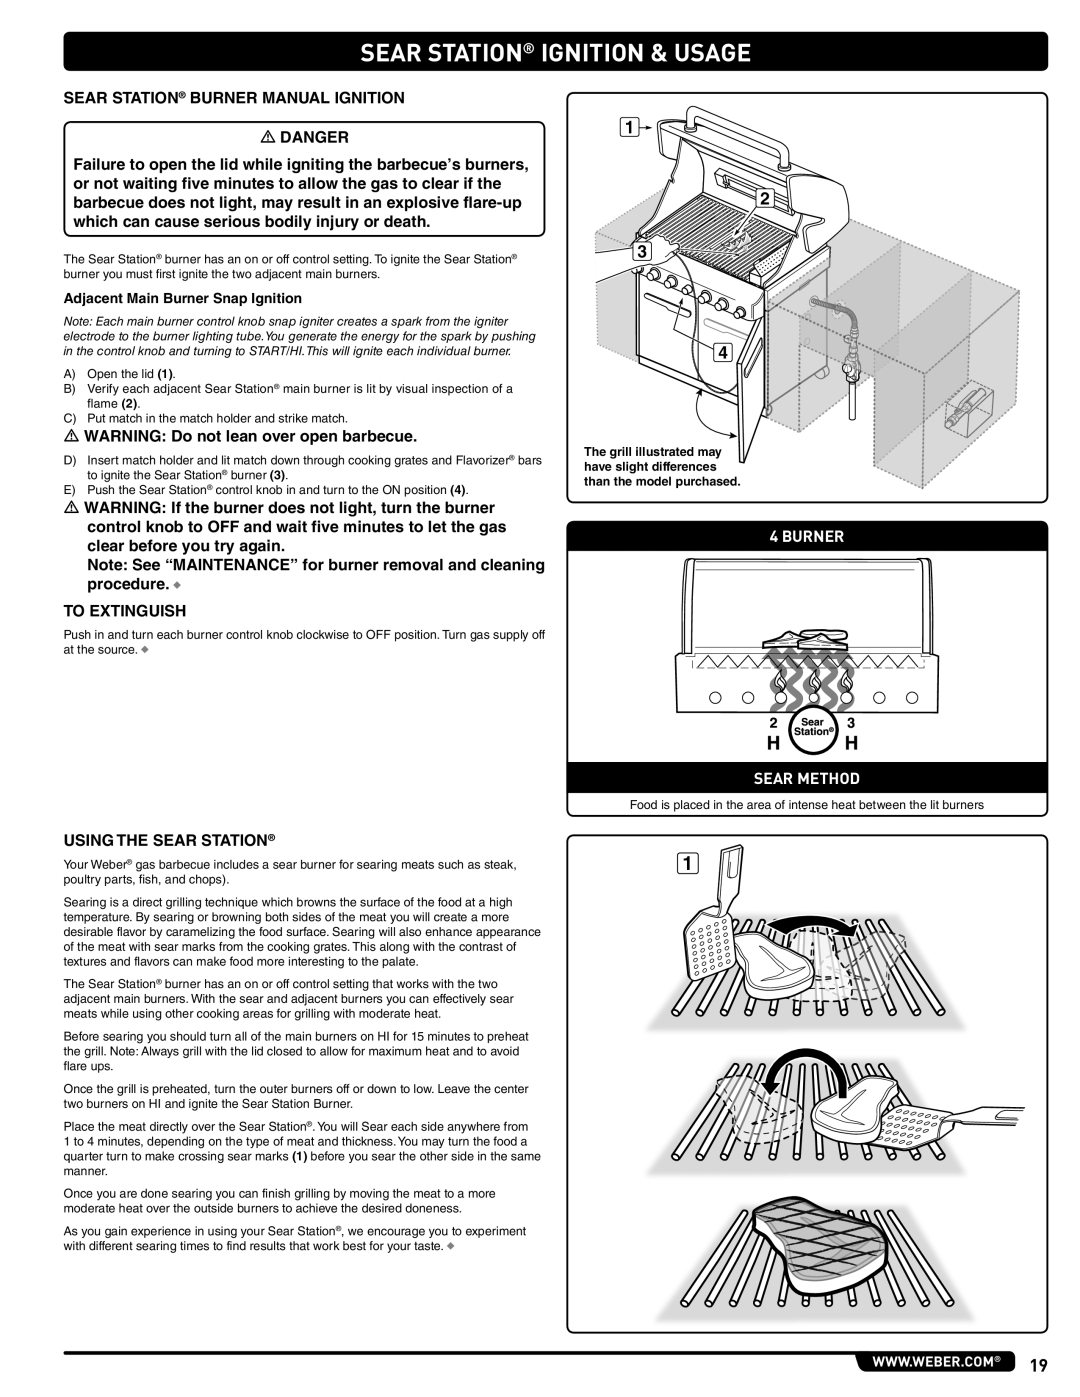 Weber 56576 manual Sear Station Ignition & Usage, Burner Sear Method 